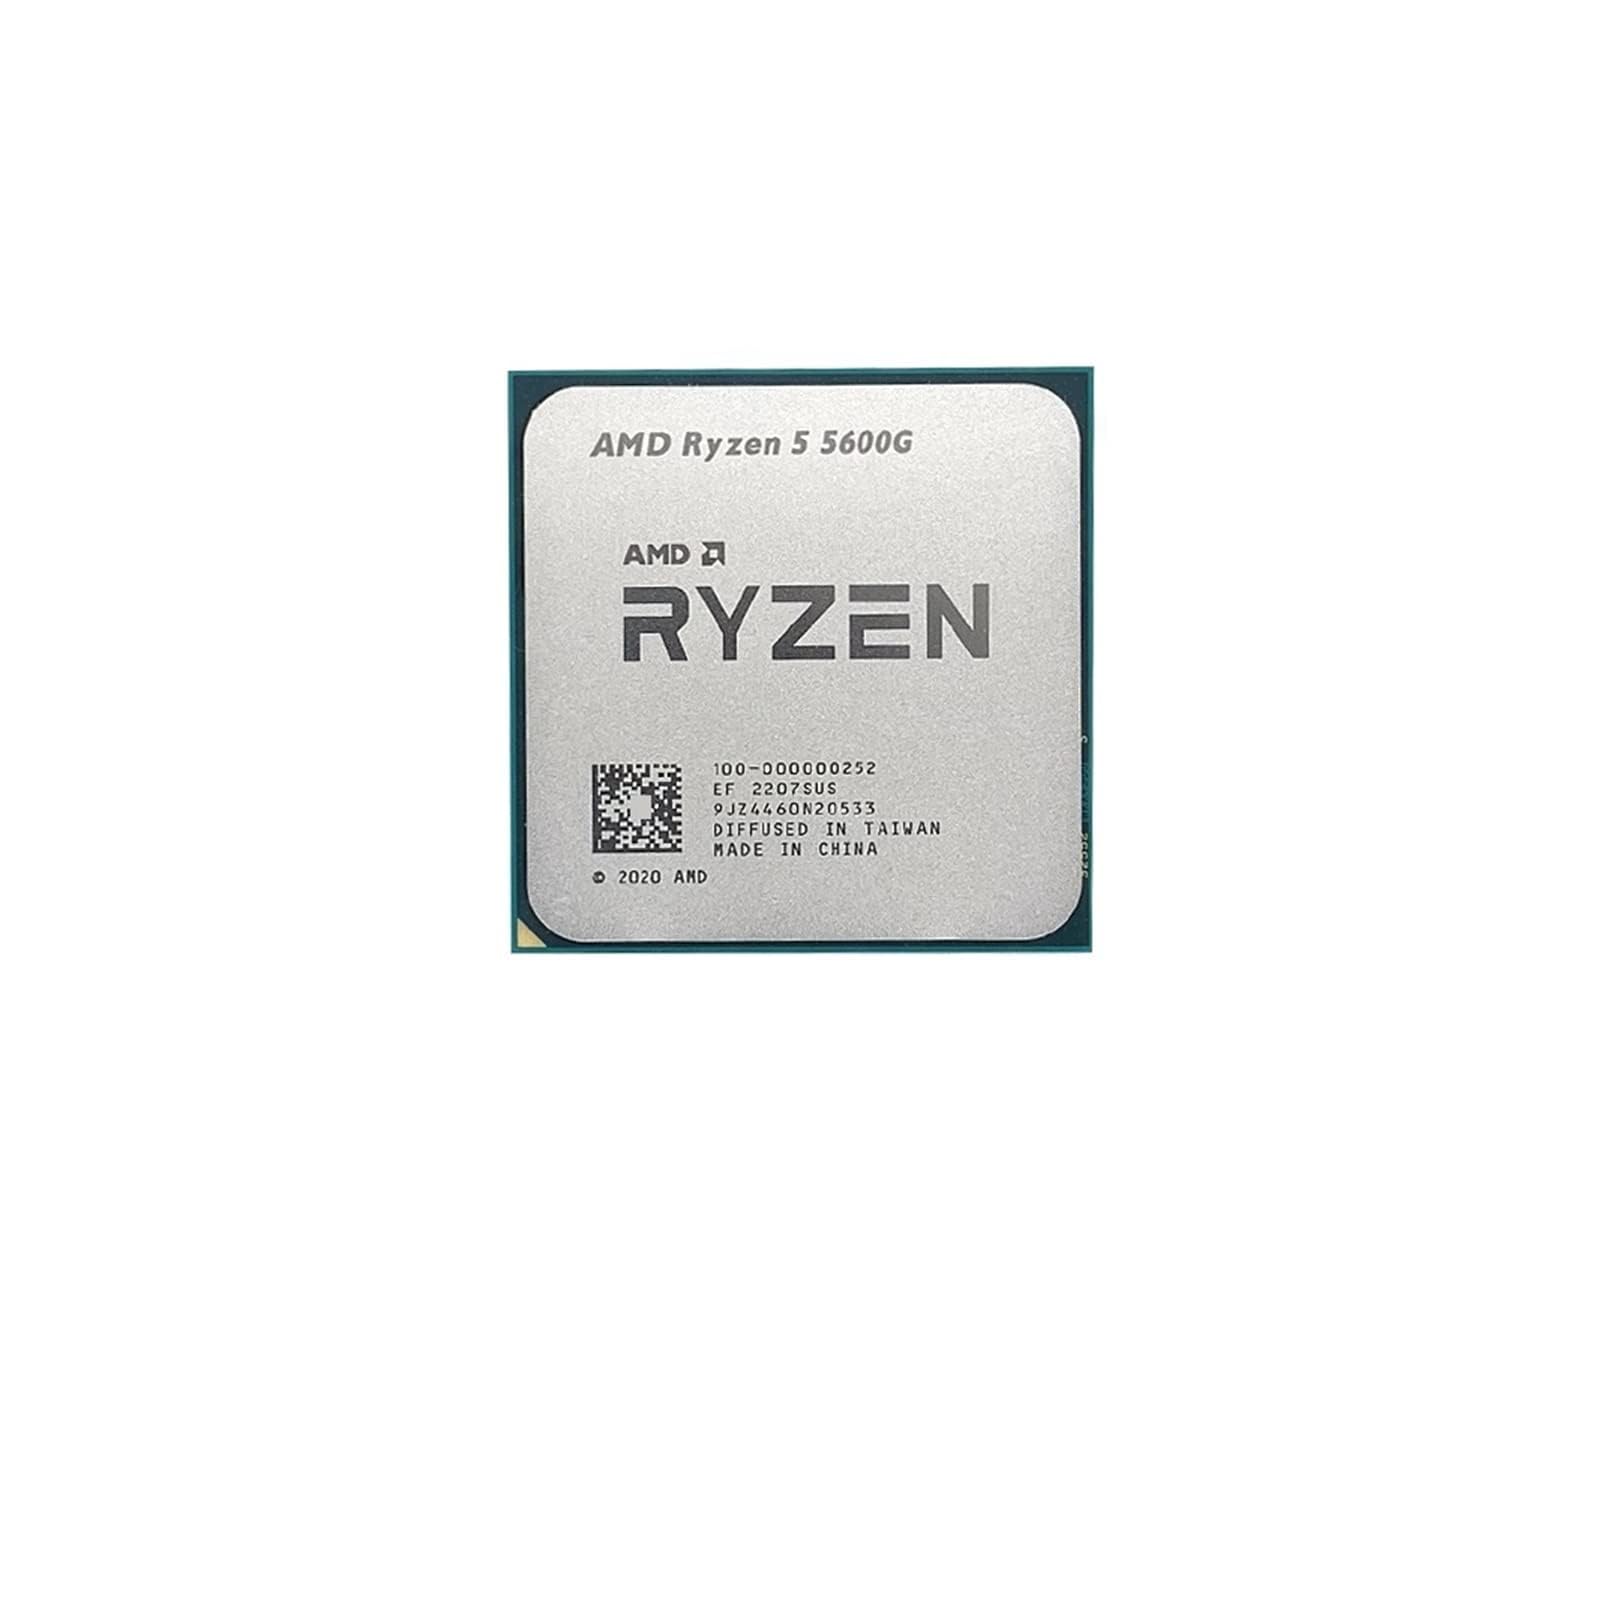 AMD Ryzen 5 5600G- 6 Core CPU, up to 4.40GHz, AM4, 12 Threads, Desktop Processor, No Cooler (Renewed) 